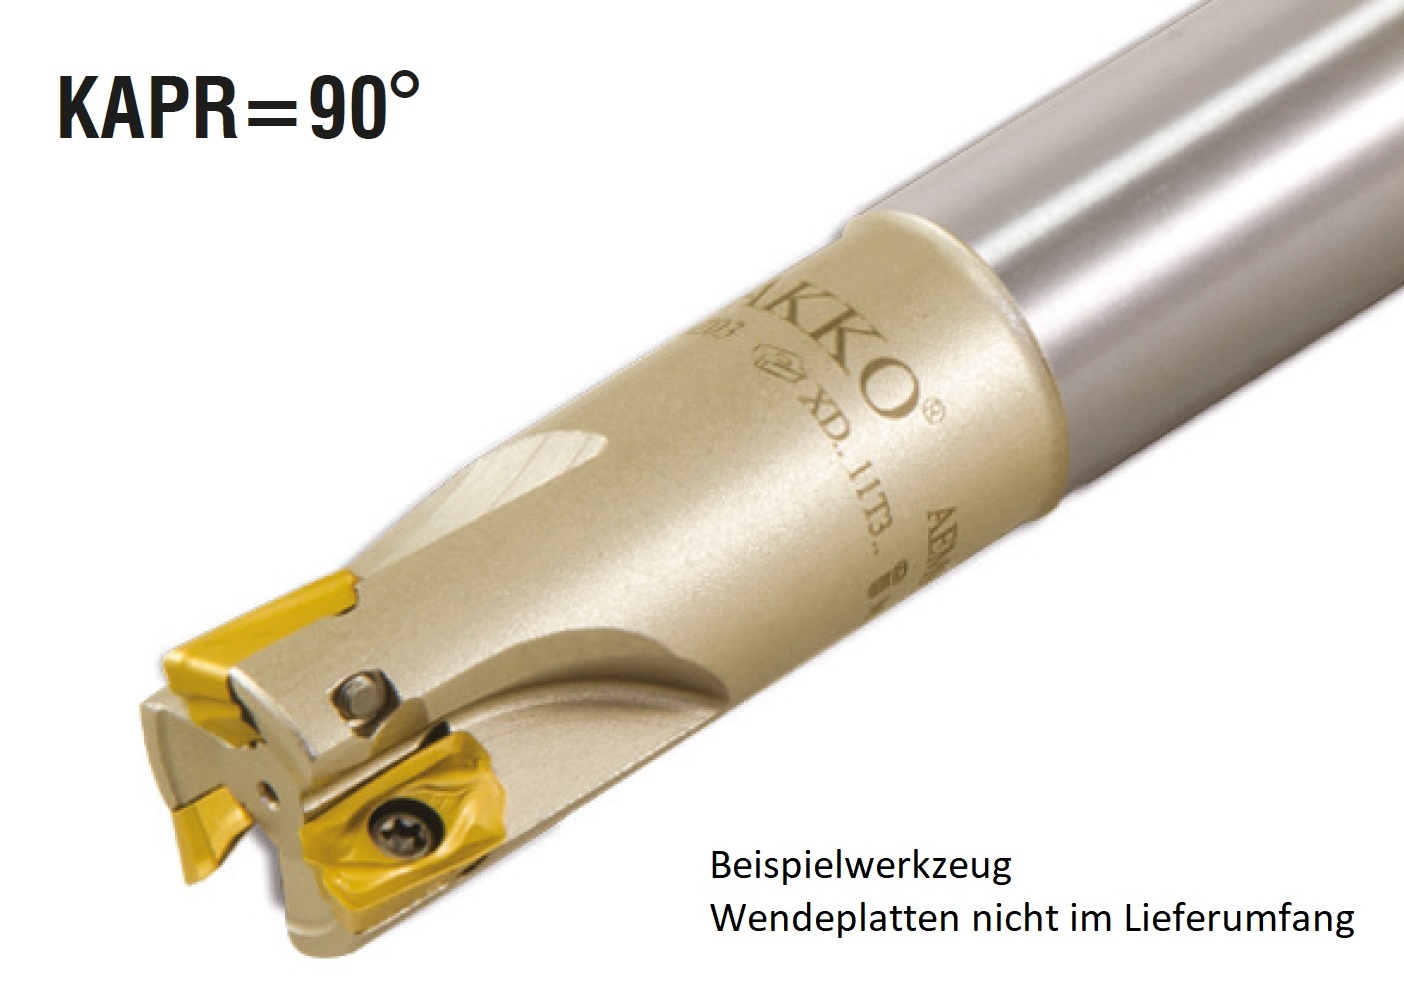 AKKO-Wendeplatten-Schaftfräser ø 16 mm, 90°, kompatibel mit Ceratizit XD.T 11T3..
Schaft-ø 16, ohne Innenkühlung, Z=2